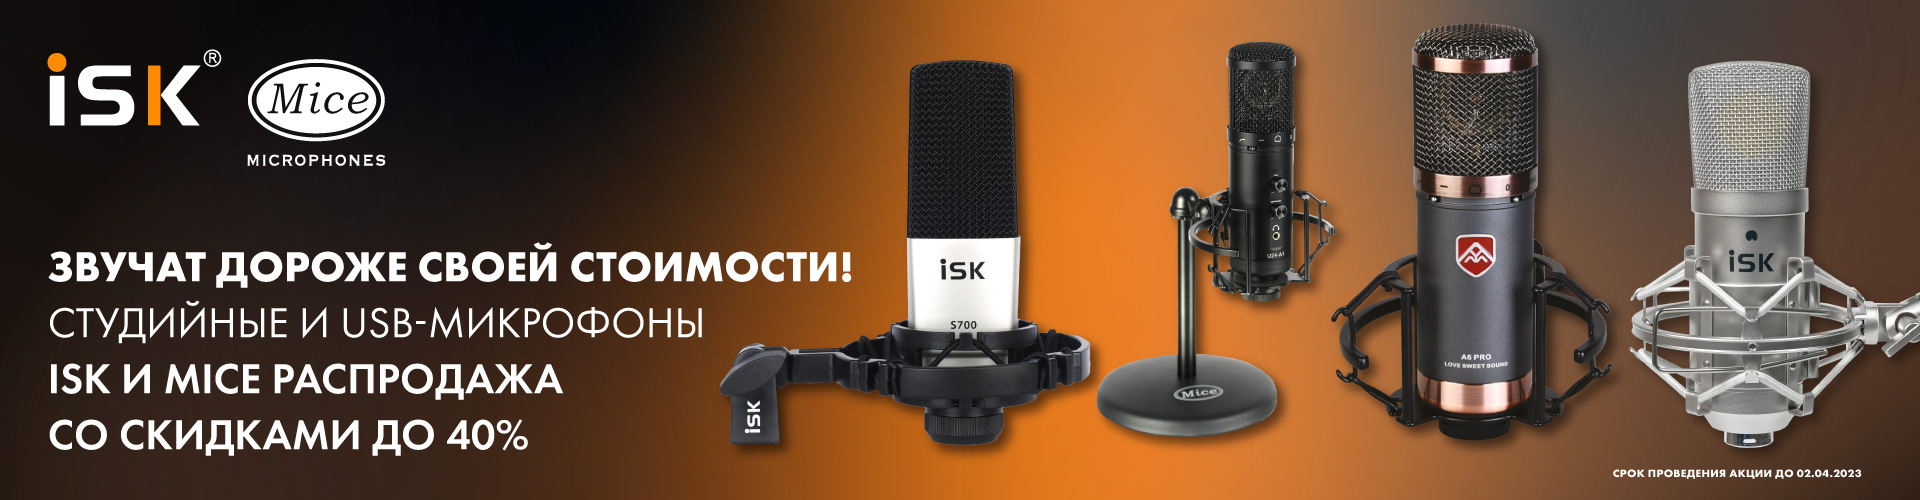 Распродажа конденсаторных и USB-микрофонов брендов Mice и ISK